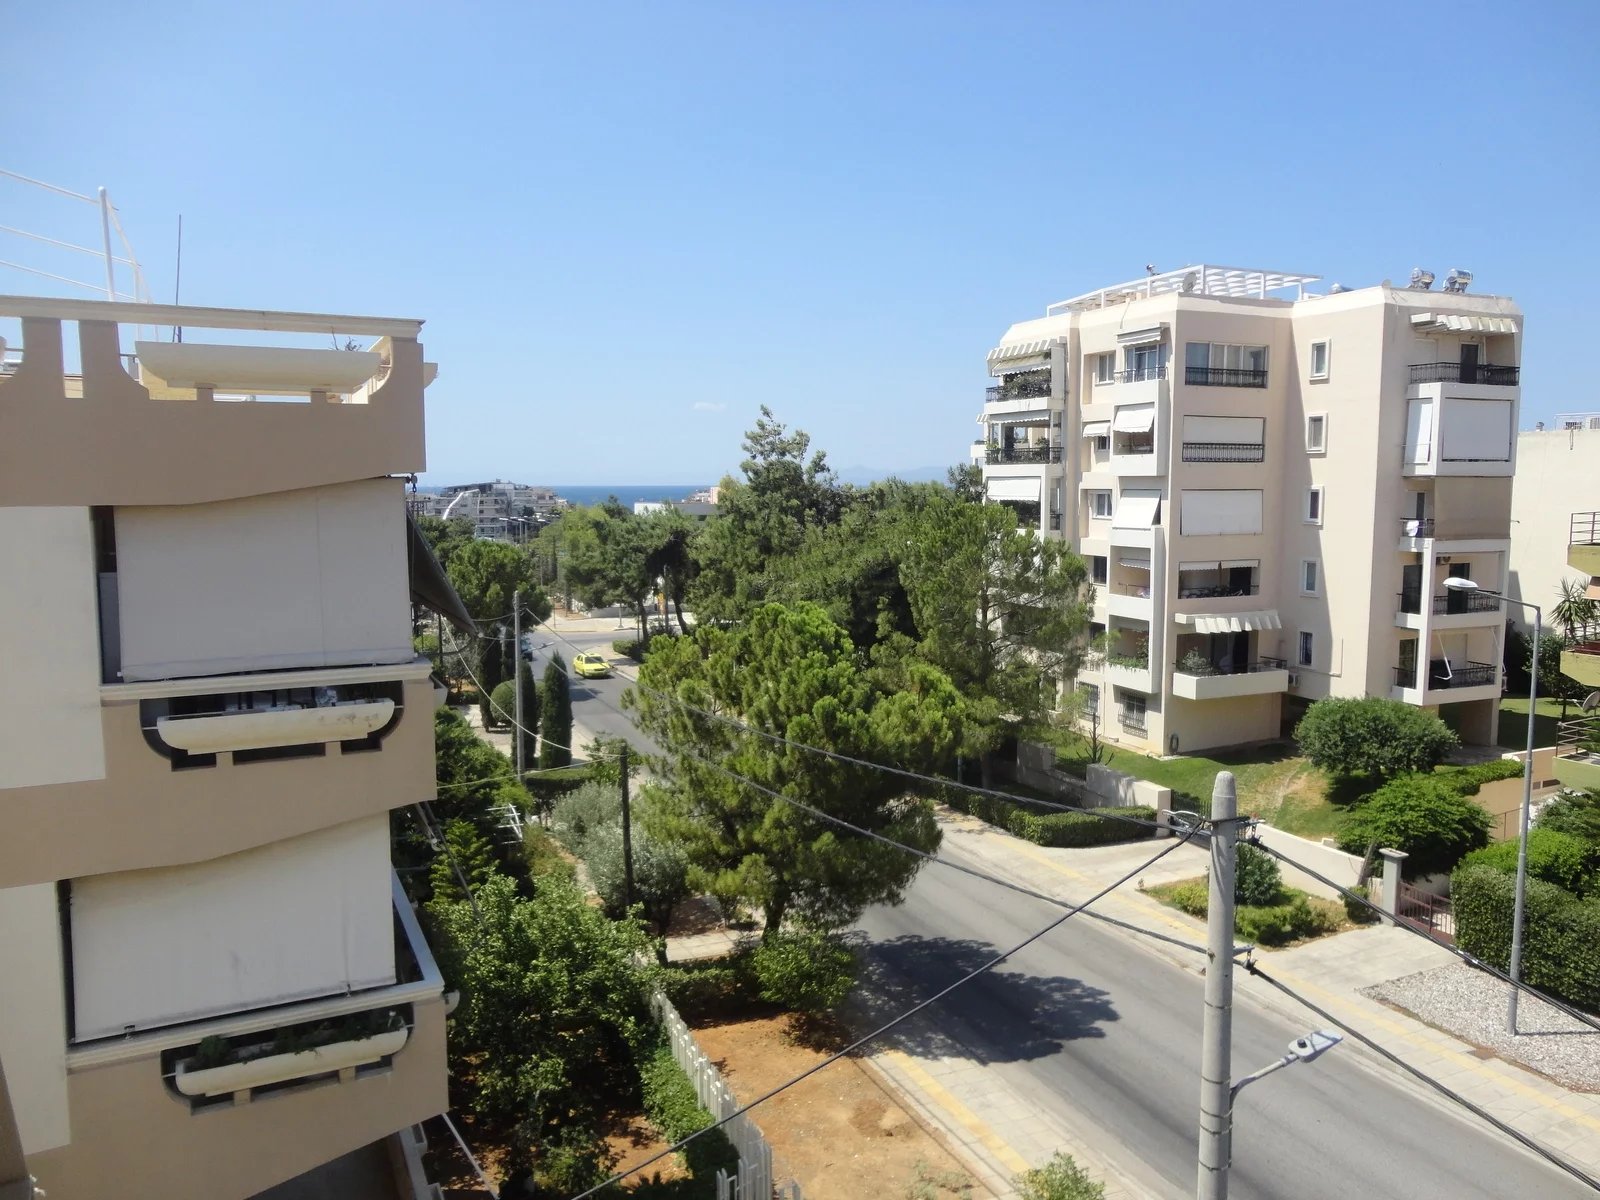 Πλήρως Ανακαινισμένο Διαμέρισμα προς Ενοικίαση 85 τ.μ στη Γλυφάδα, Αθήνα. Κοντά στη θάλασσα και στο Golf Club